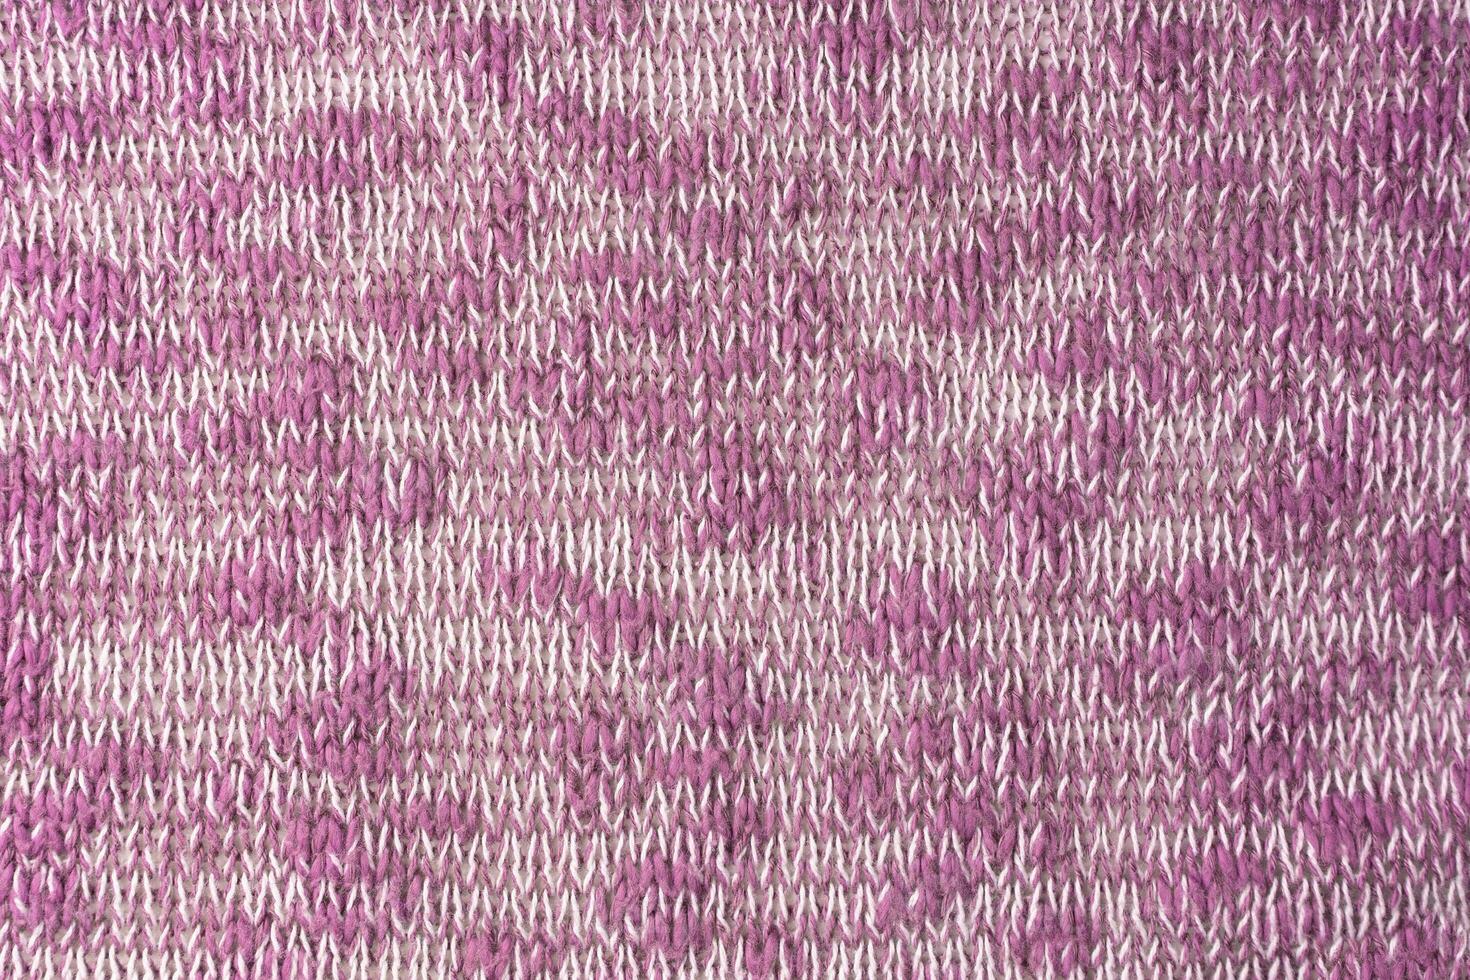 brilhante Rosa branco mistura malhas lã tecido textura fundo. abstrato têxtil pano de fundo foto